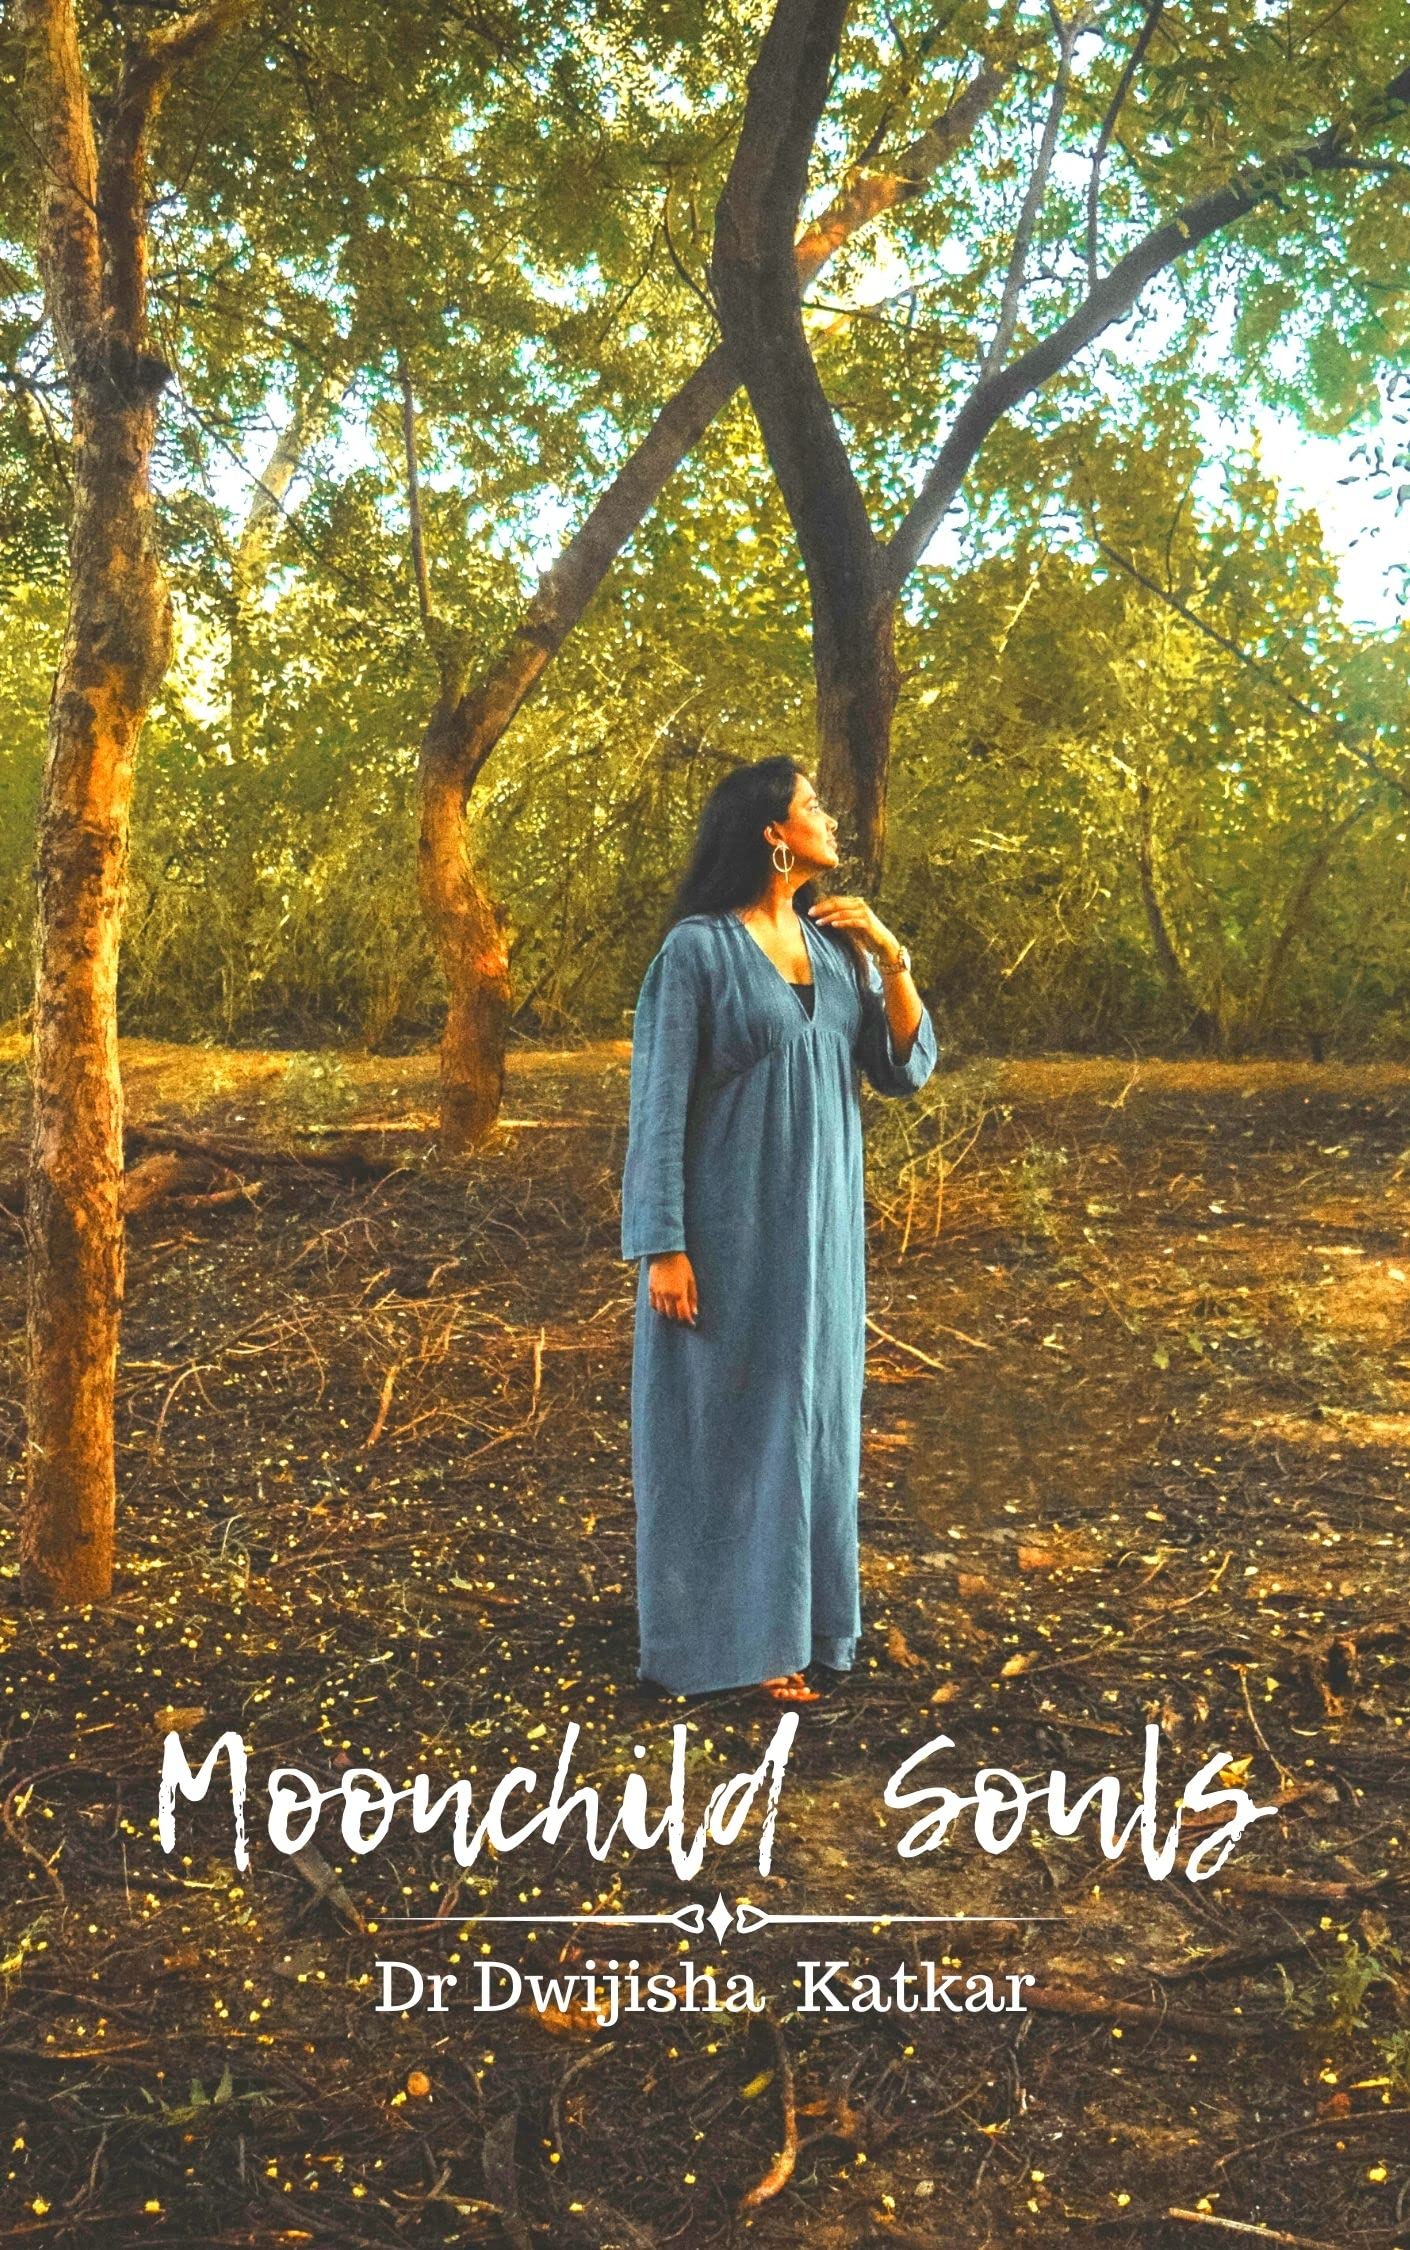 Moonchild Souls